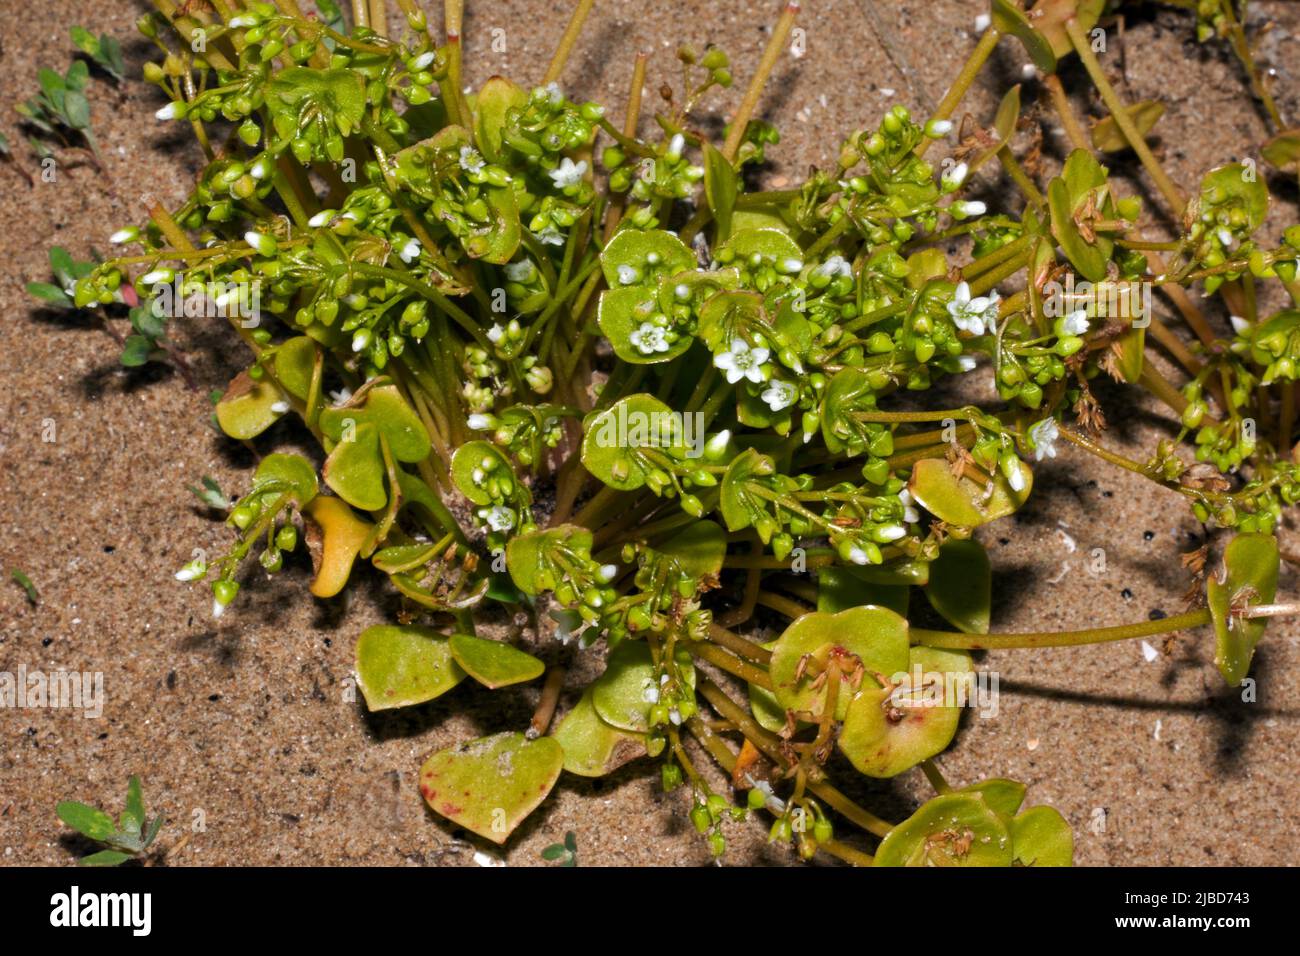 Claytonia perfoliata (laitue du mineur) est une espèce comestible, charnue, herbacée, indigène chaque année dans les régions occidentales de l'Amérique du Nord. Banque D'Images